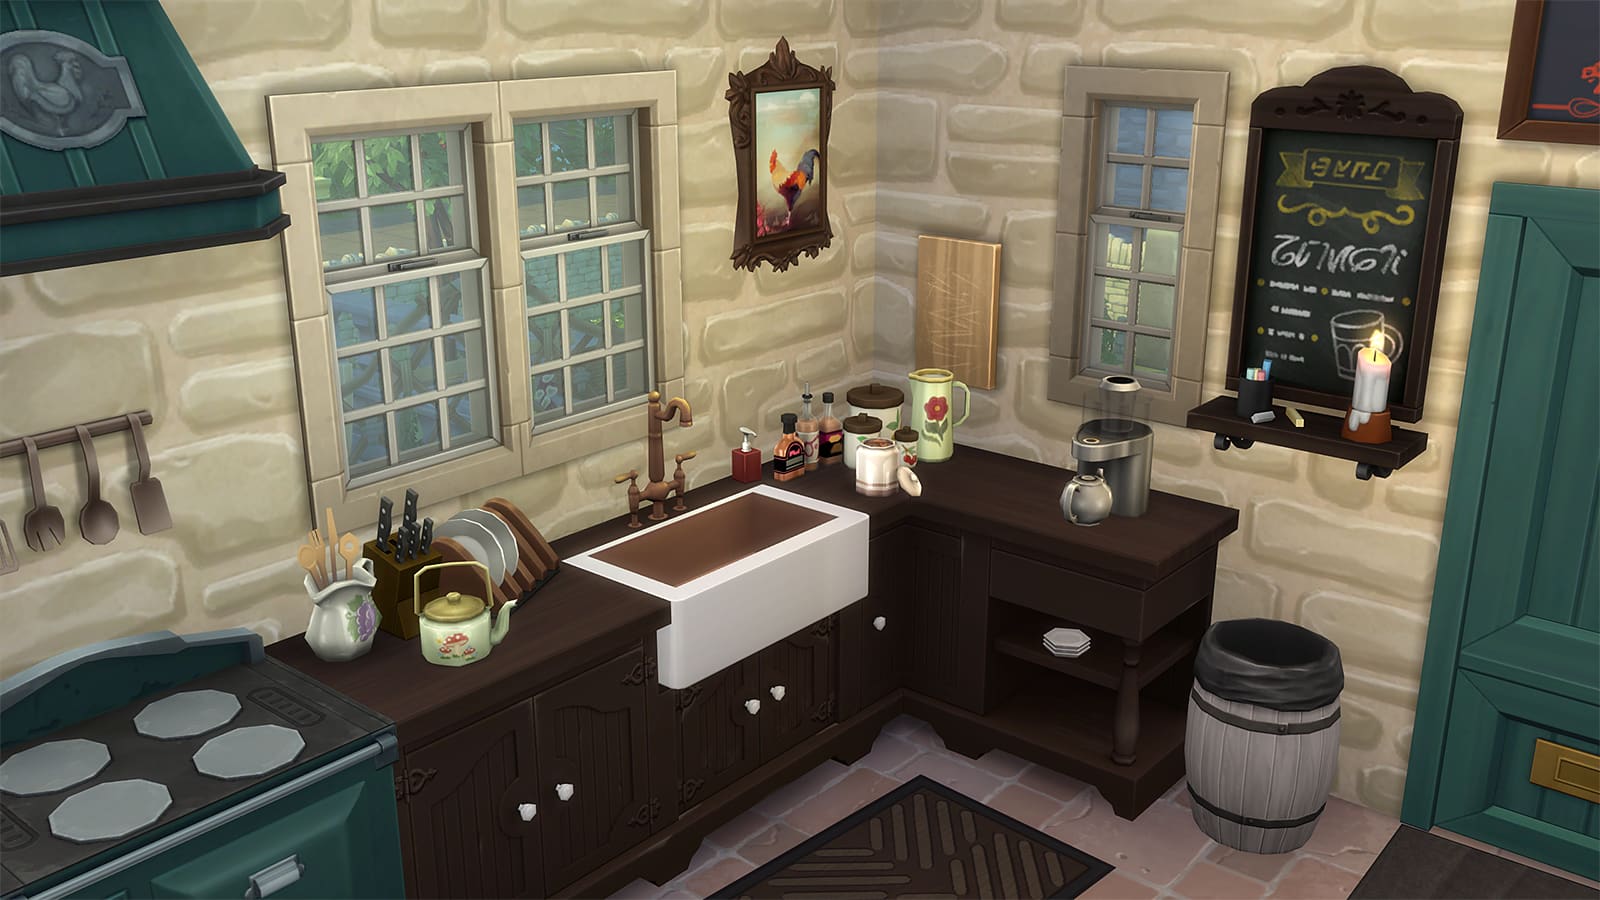 Una cocina en los Sims 4 usando el mod de estante OMSP